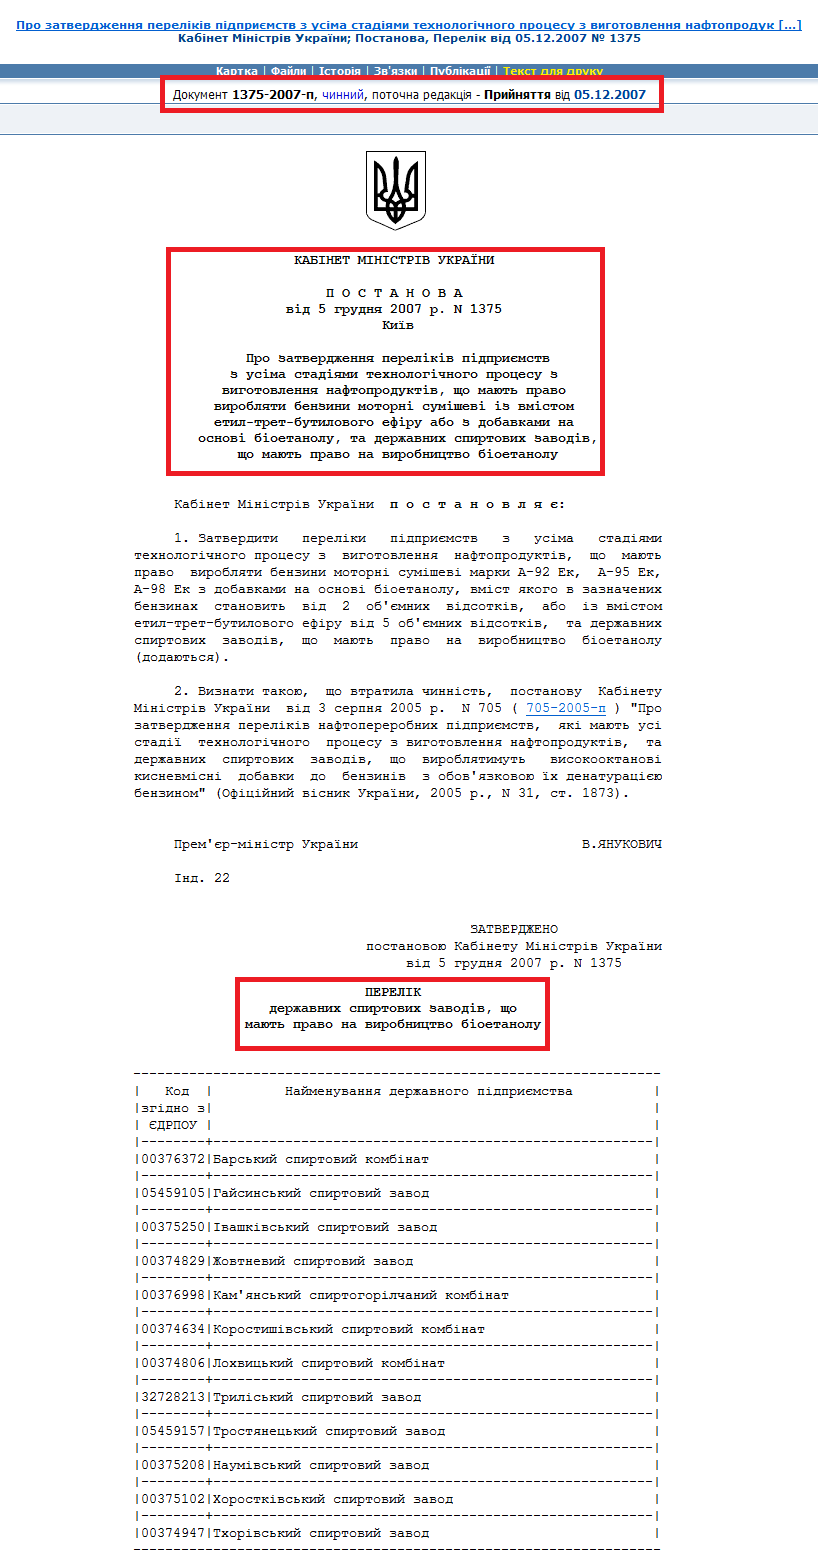 http://zakon3.rada.gov.ua/laws/show/1375-2007-%D0%BF